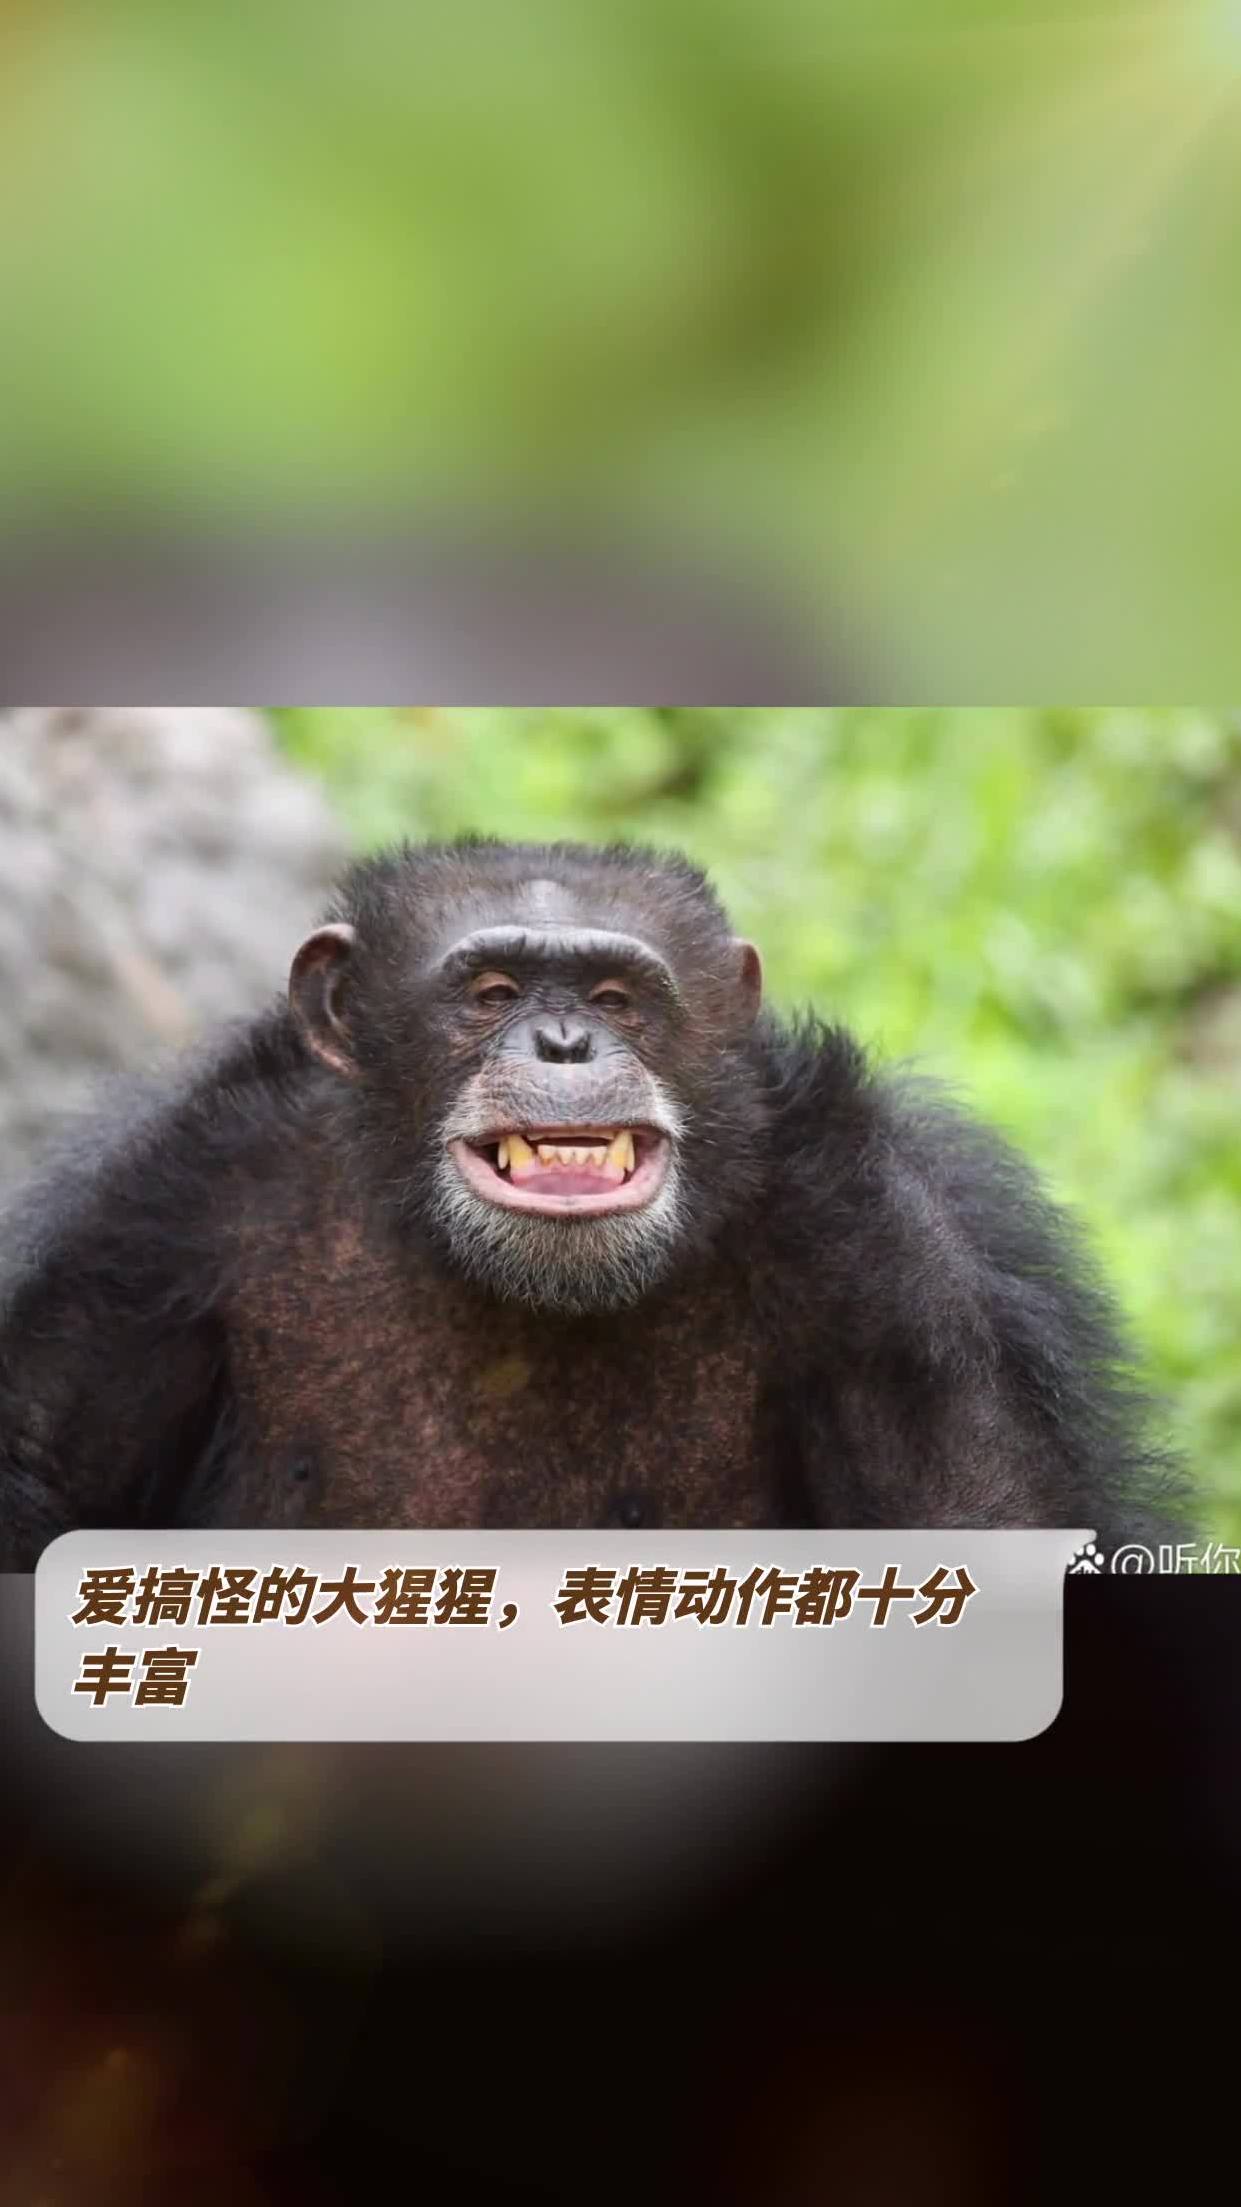 爱搞怪的大猩猩,表情动作都十分丰富